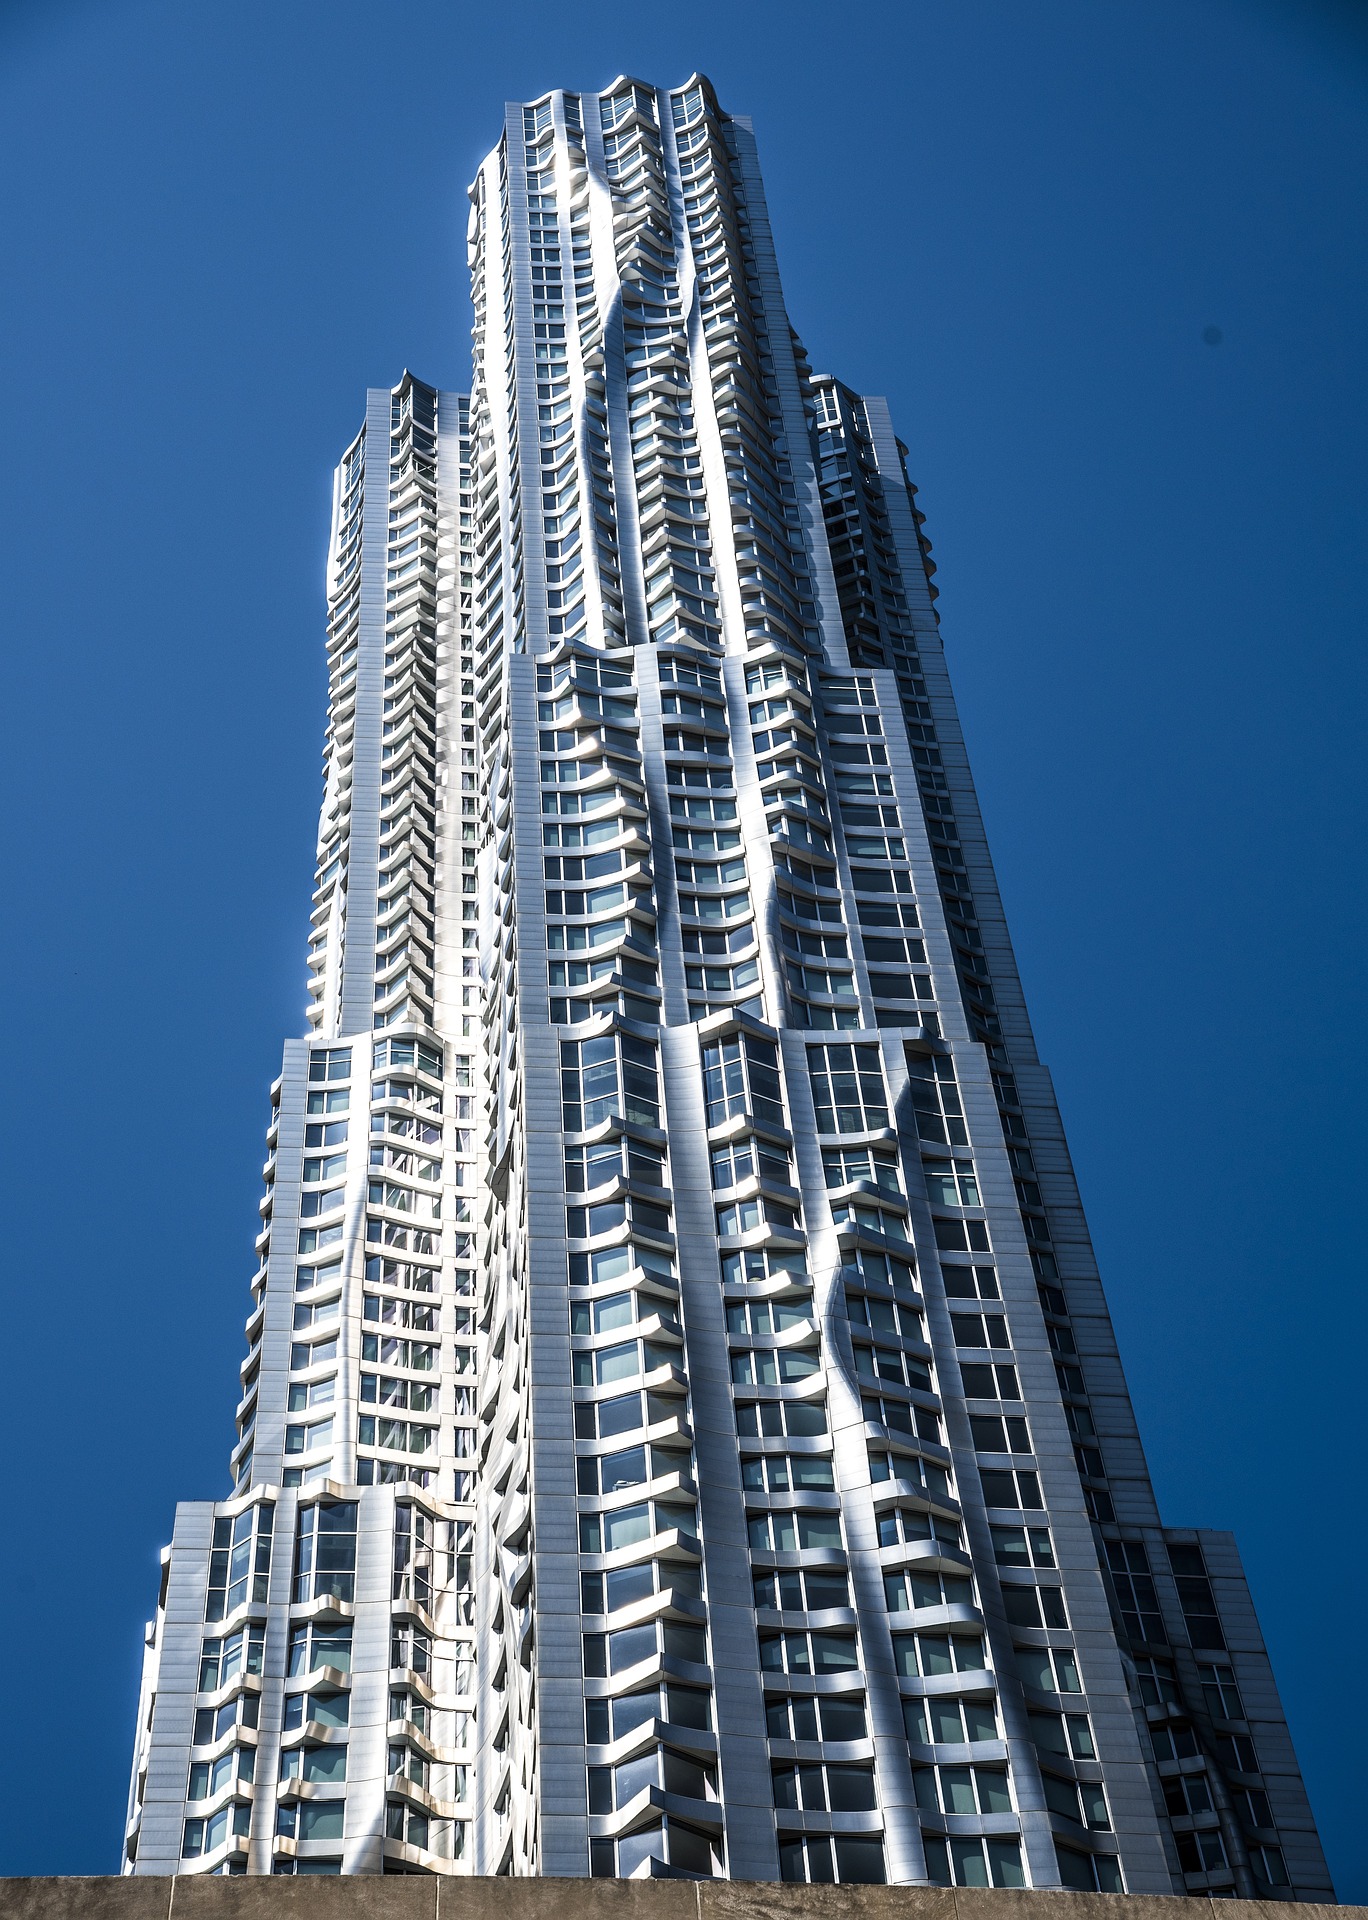 Rascacielos con una diferencia: 8 Spruce Street (Nueva York) que diseña Frank Gehry en estilo deconstructivista